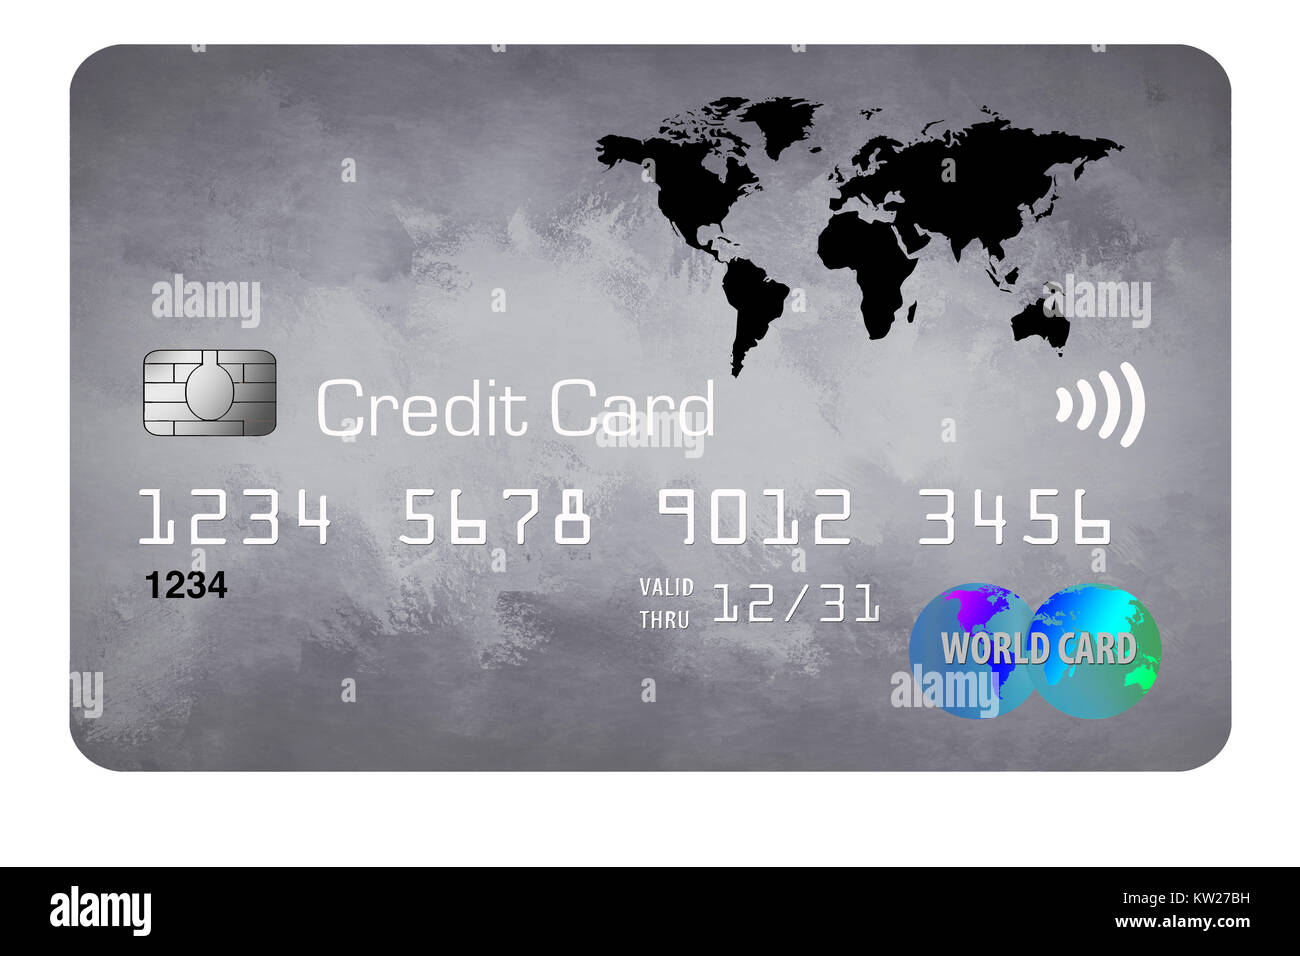 In dieser Abbildung ist eine Kreditkarte mit einem Weltkarte-Design zu sehen Stockfoto